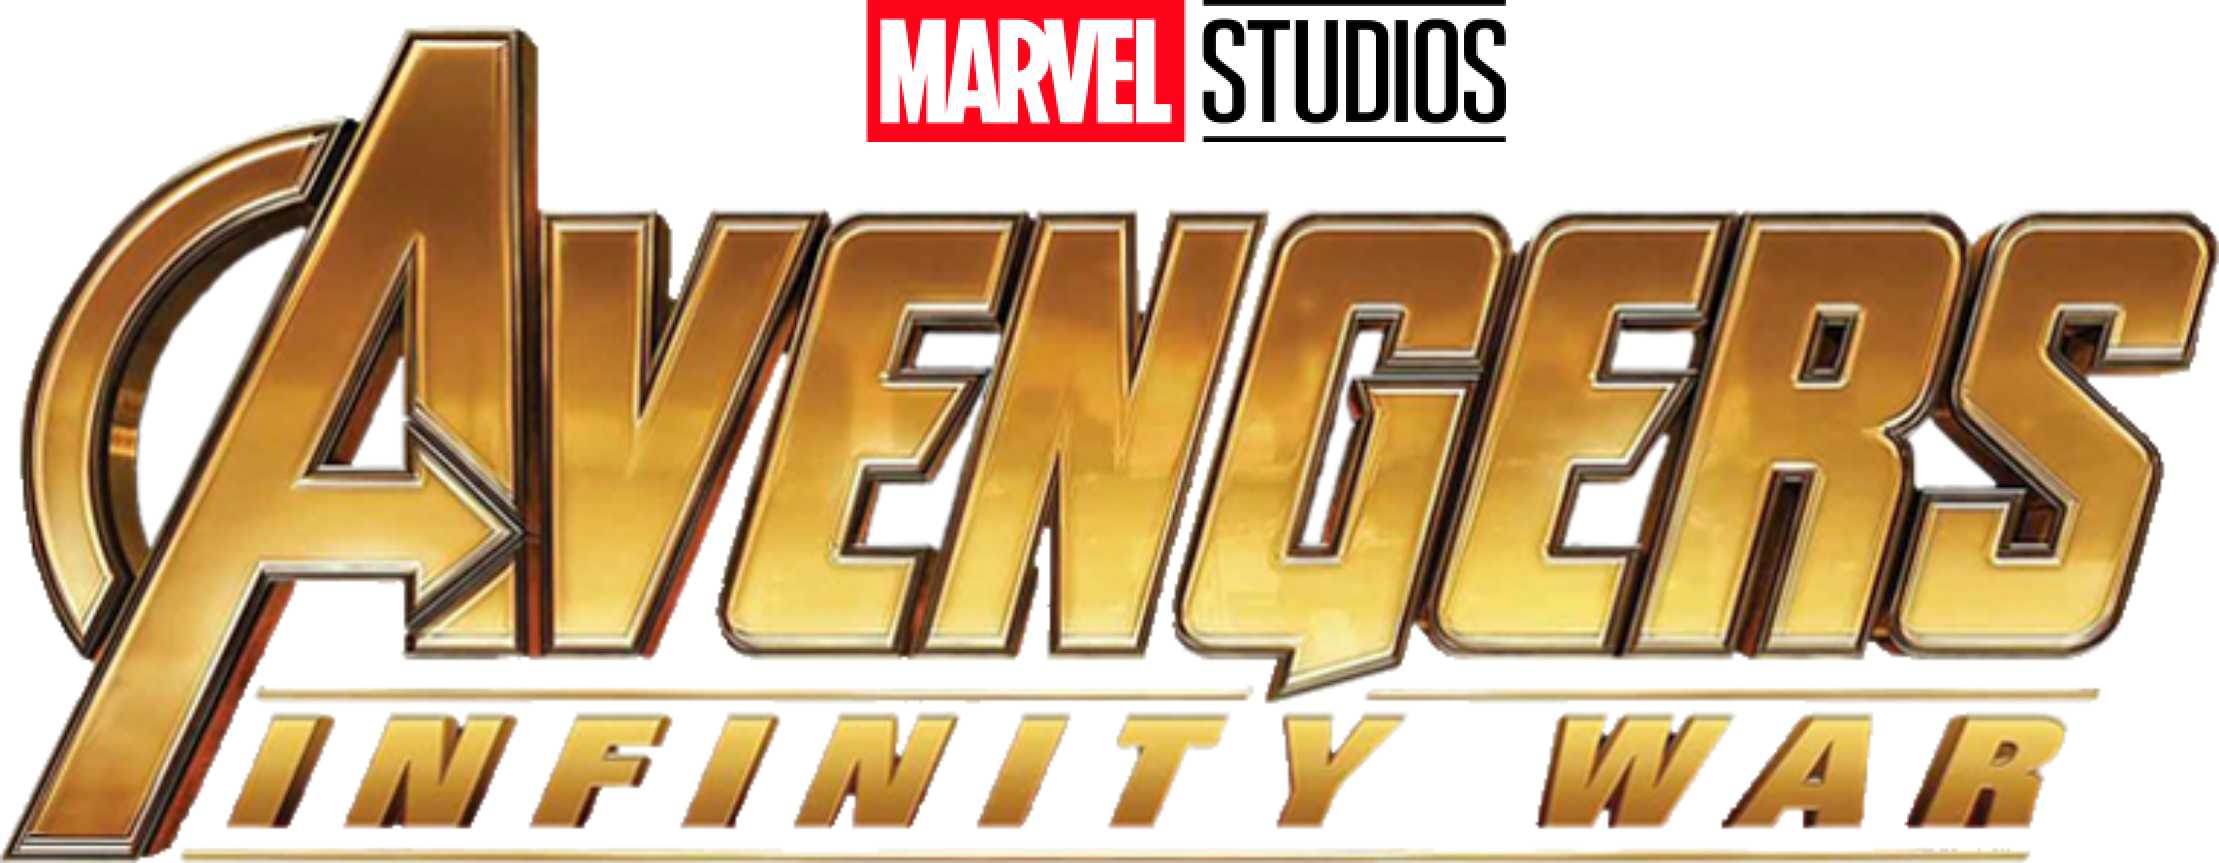 Logo Avengers Infinity War - KibrisPDR